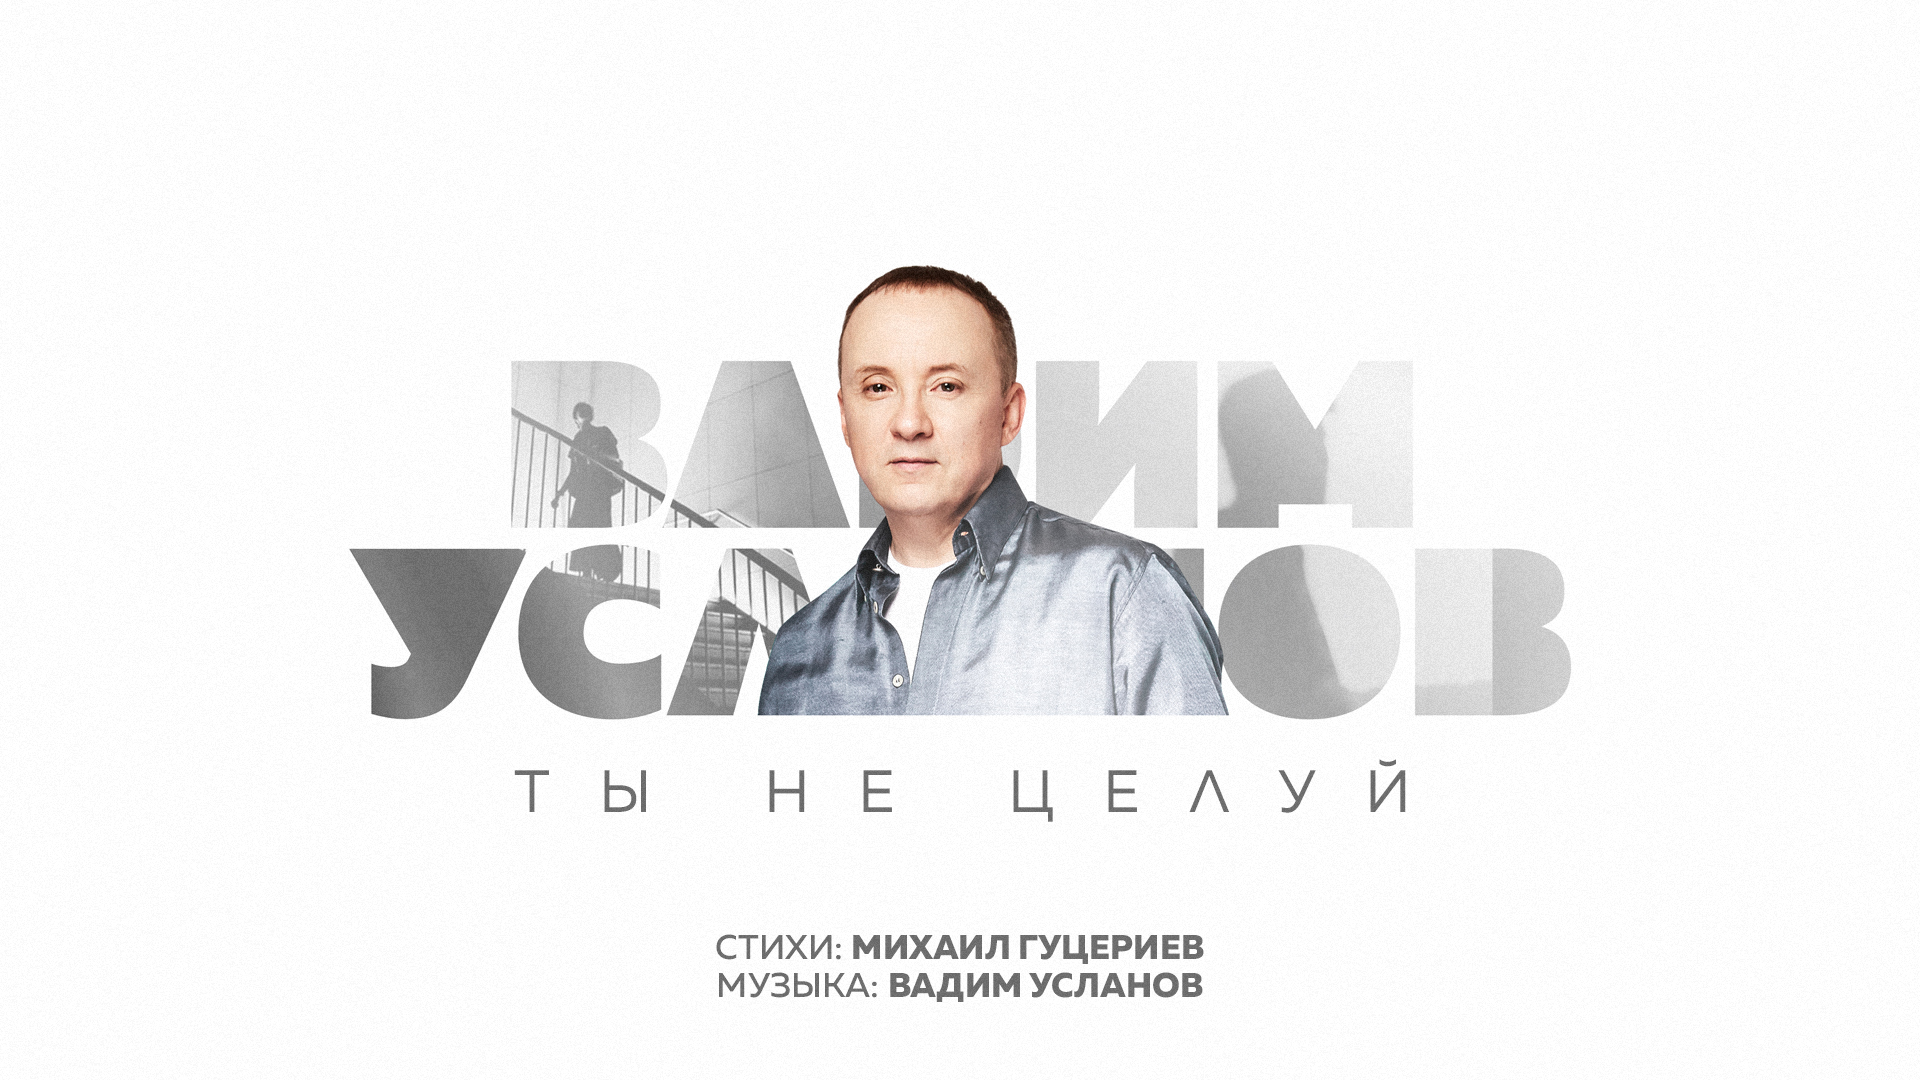 Вадим Усланов рассказал о совместной работе с Михаилом Гуцериевым над песней «Ты не целуй»